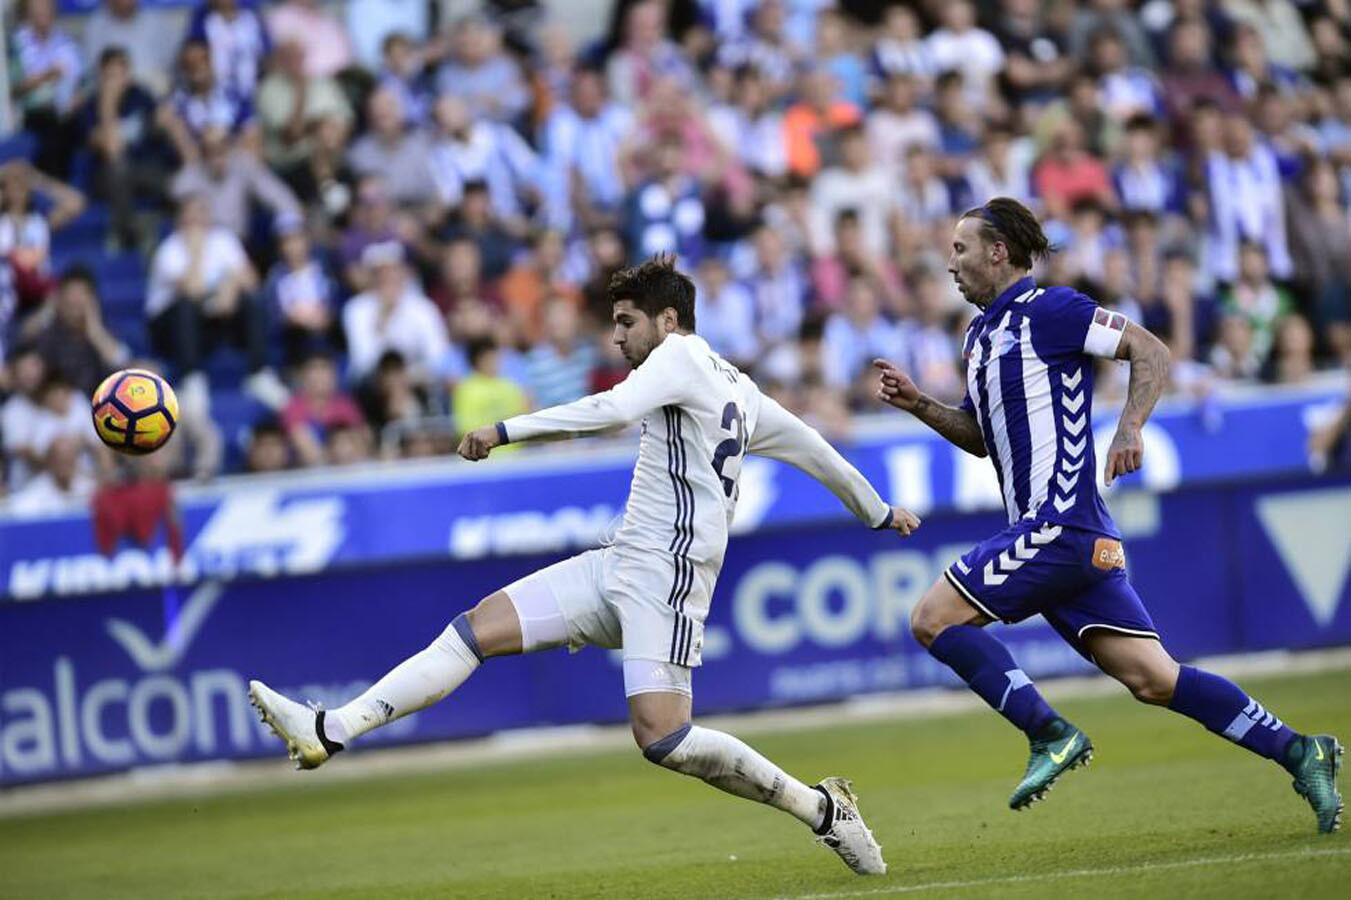 La Liga: Alaves 1 - 4 Real Madrid